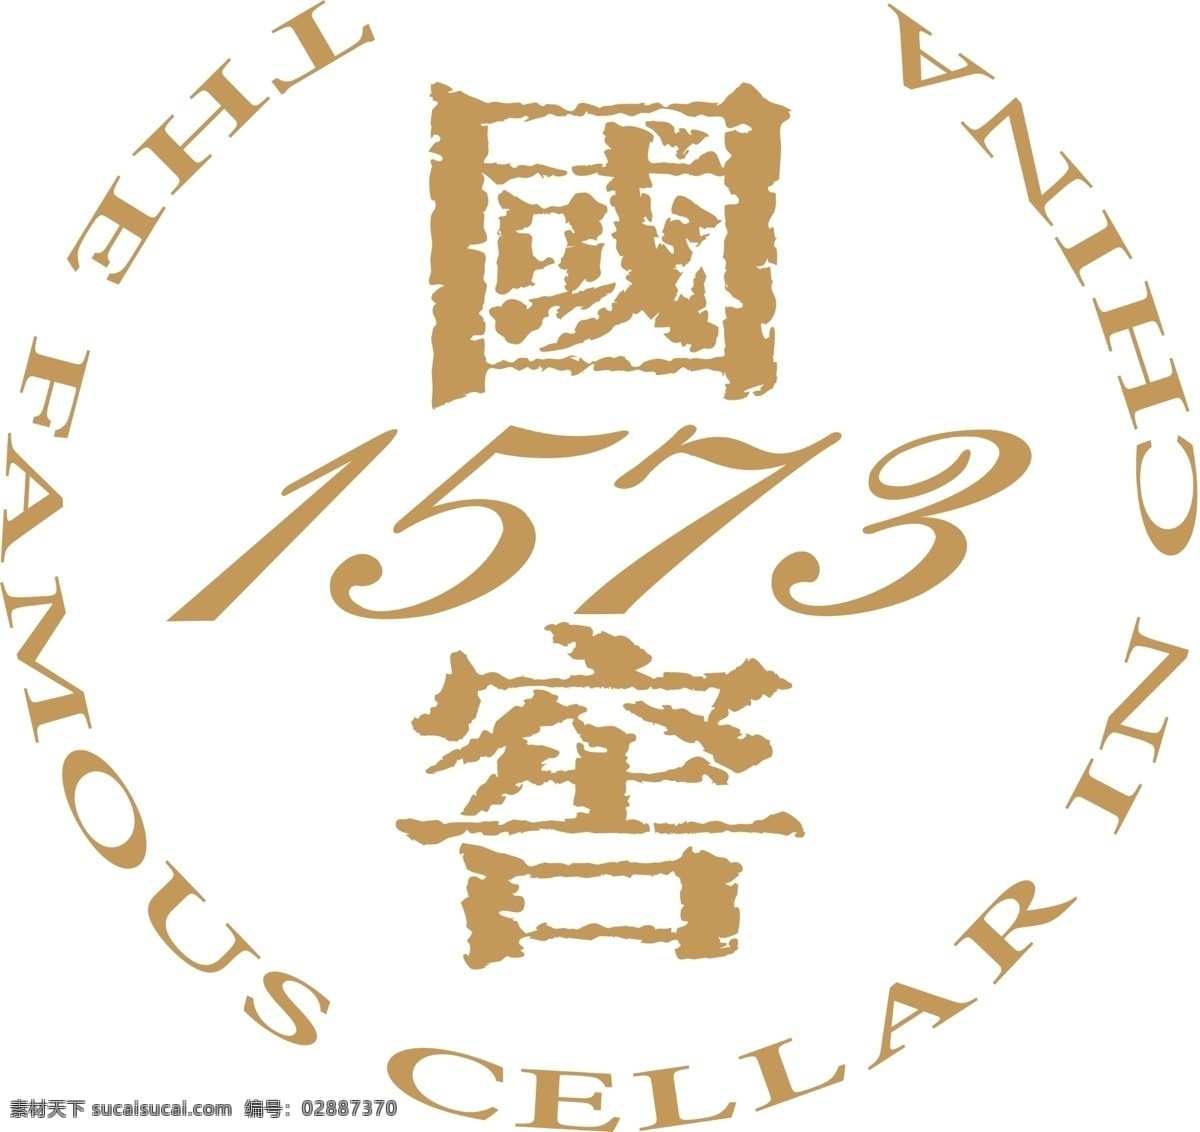 国 窖 1573 logo 国窖1573 国窖商标 psd格式 logo设计